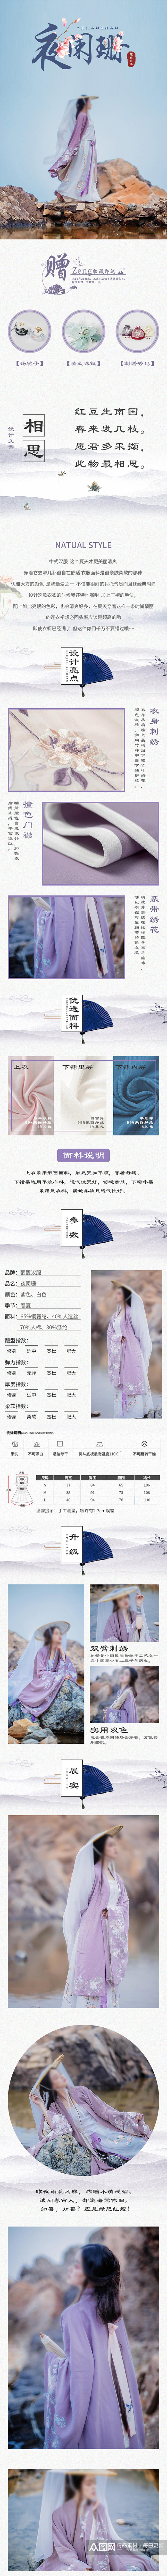 中国风服装类古装汉服详情页素材